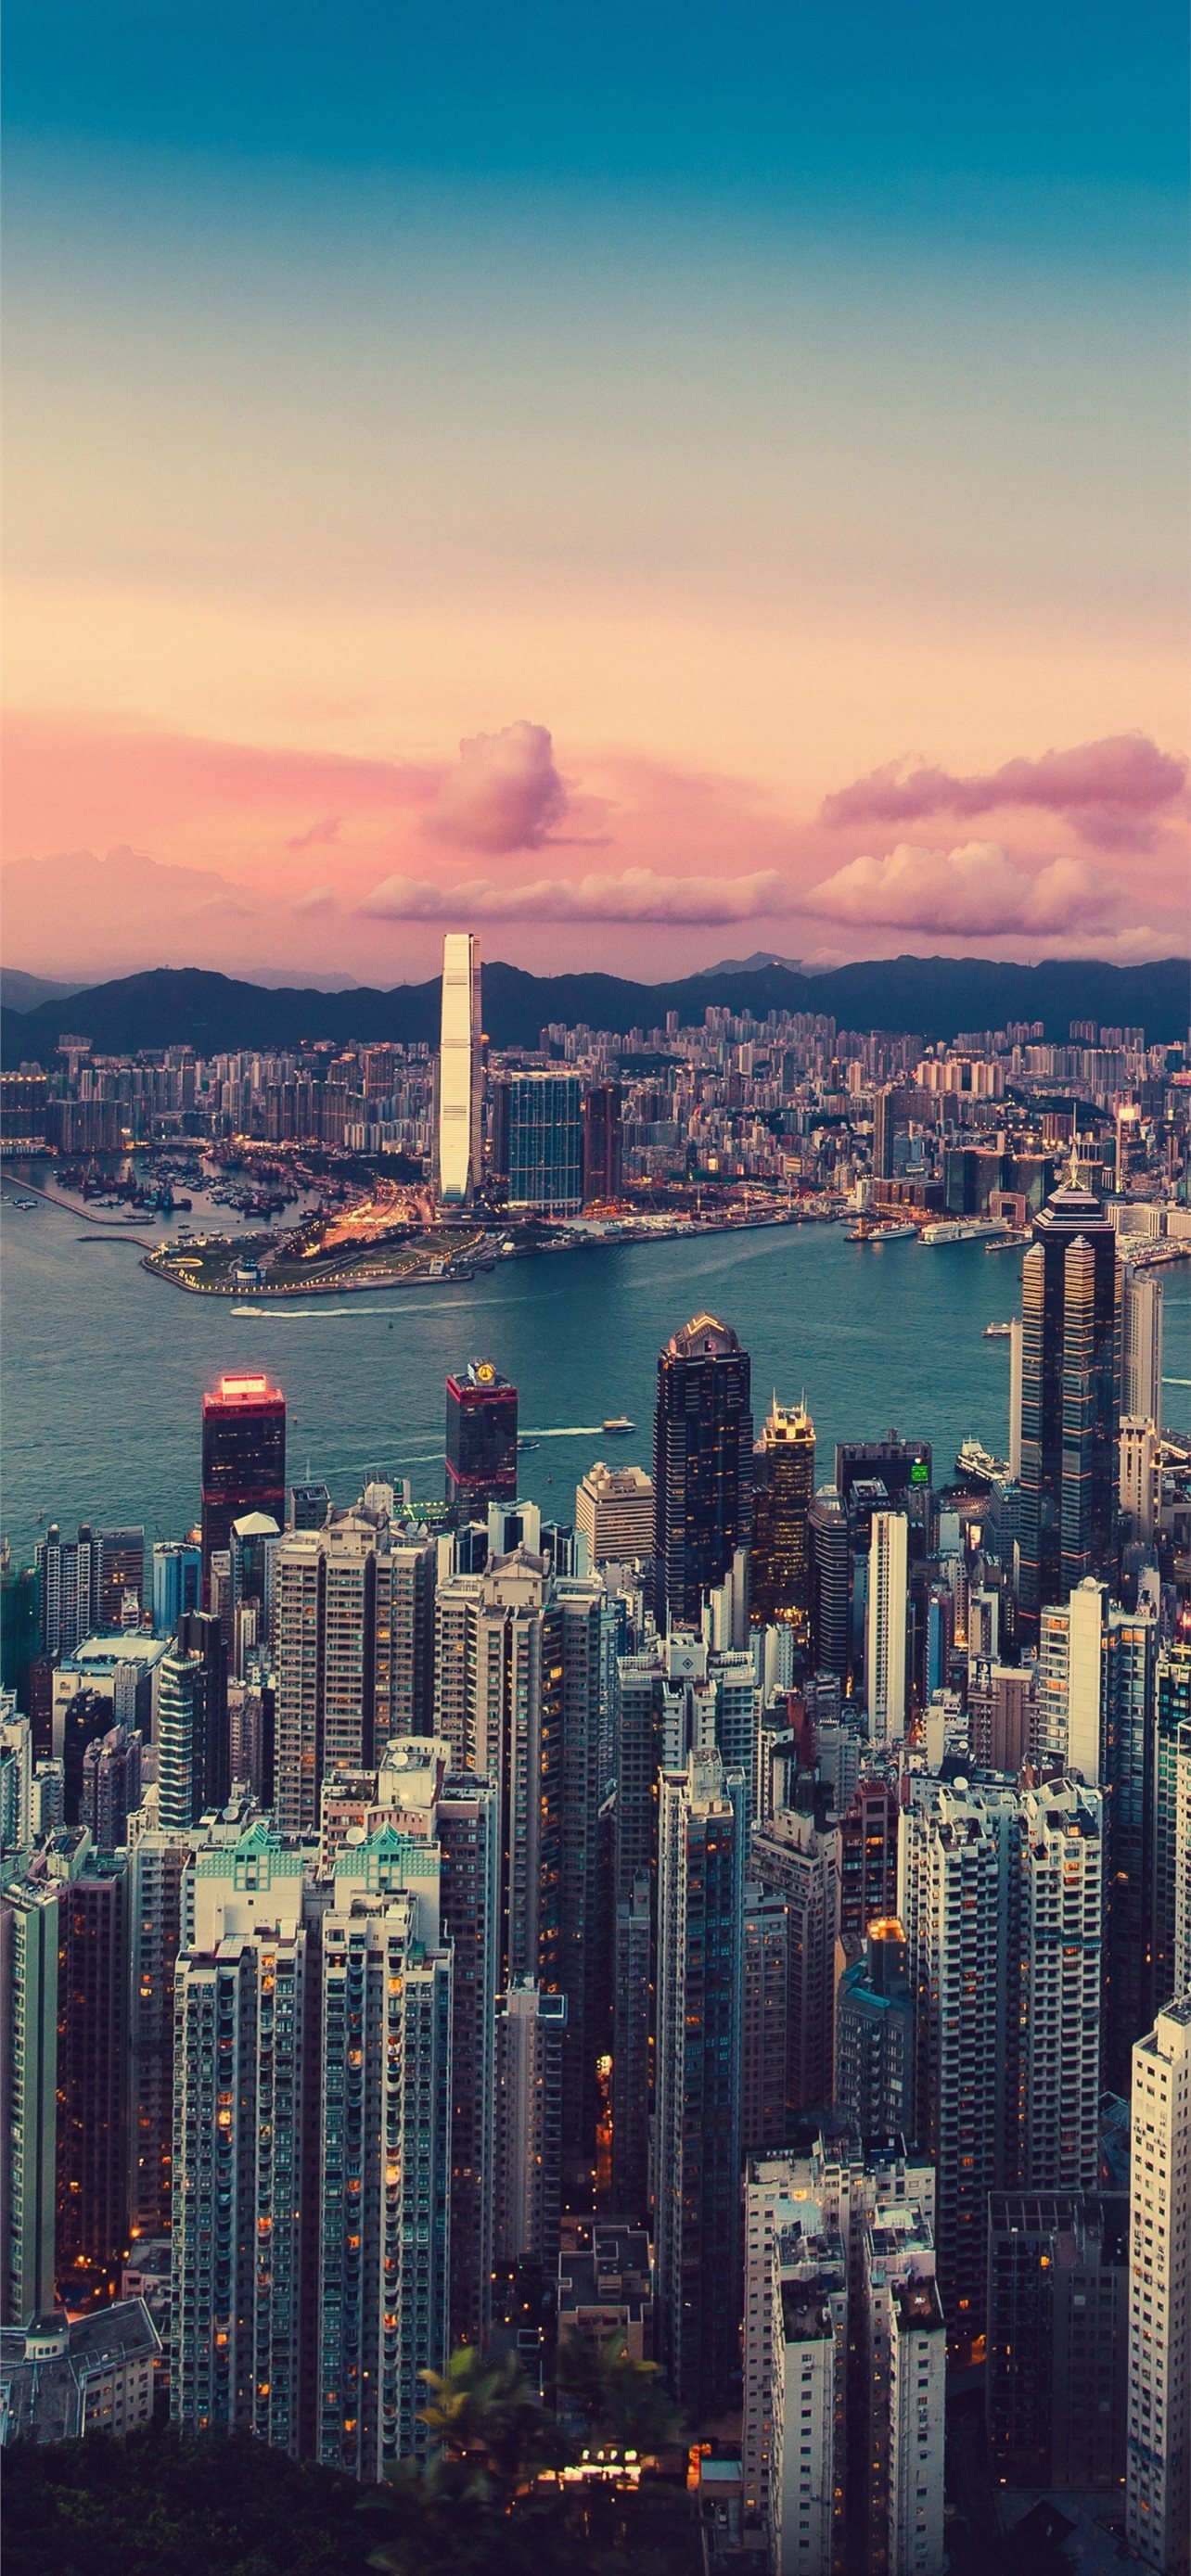 Hong Kong 8K Resolution HD City 4K Image Photo a. iPhone Wallpaper Free Download